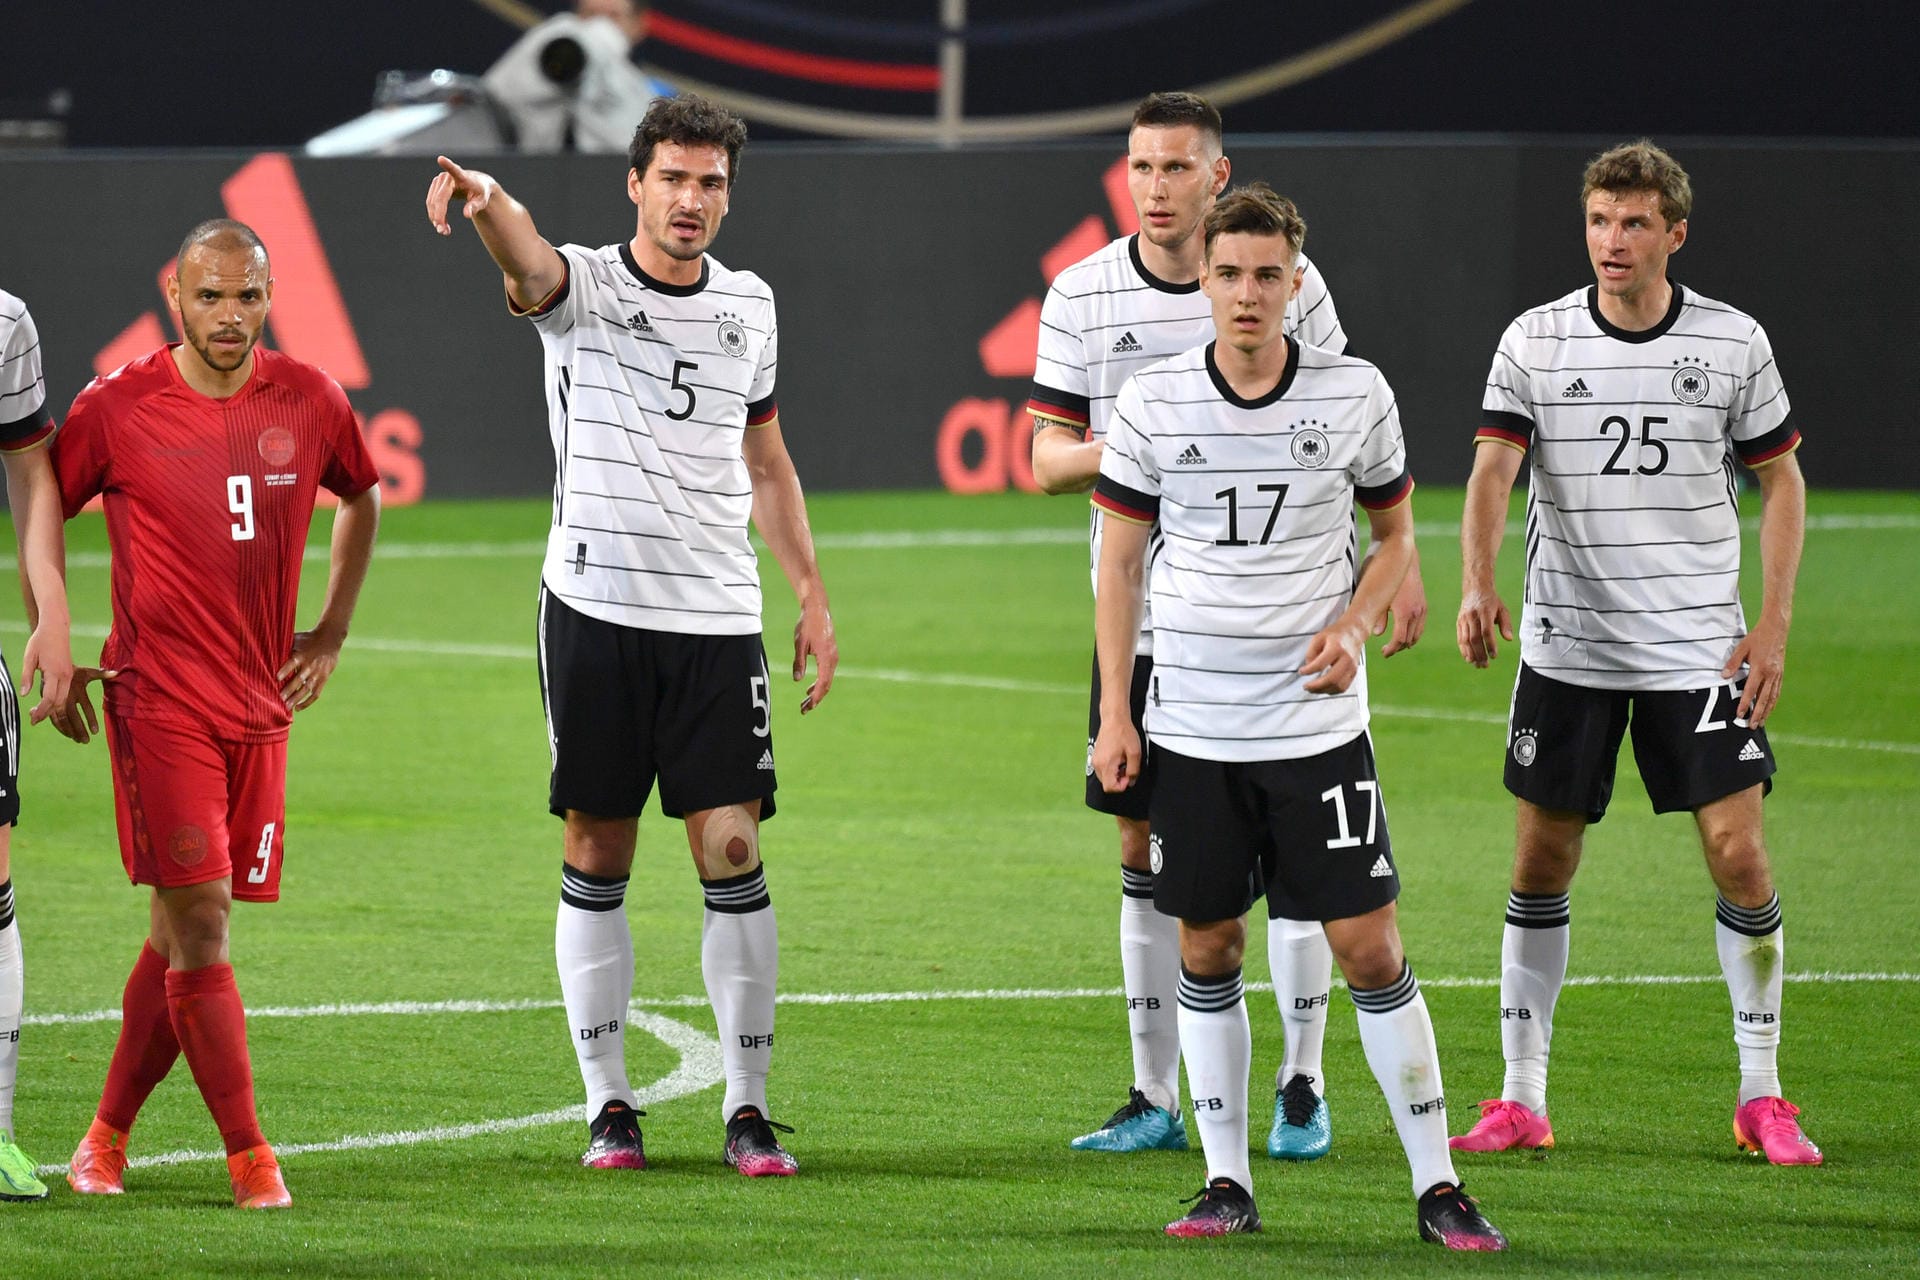 Die deutsche Nationalelf ist mit einem Remis gegen Dänemark in die EM-Vorbereitung gestartet. In Innsbruck hieß es trotz zahlreicher Chancen und zwei Aluminiumtreffern des DFB-Teams am Ende 1:1. Ein Rückkehrer spielte dabei wie in alten Zeiten. Auch ein Youngster überzeugte. Die t-online-Einzelkritik.